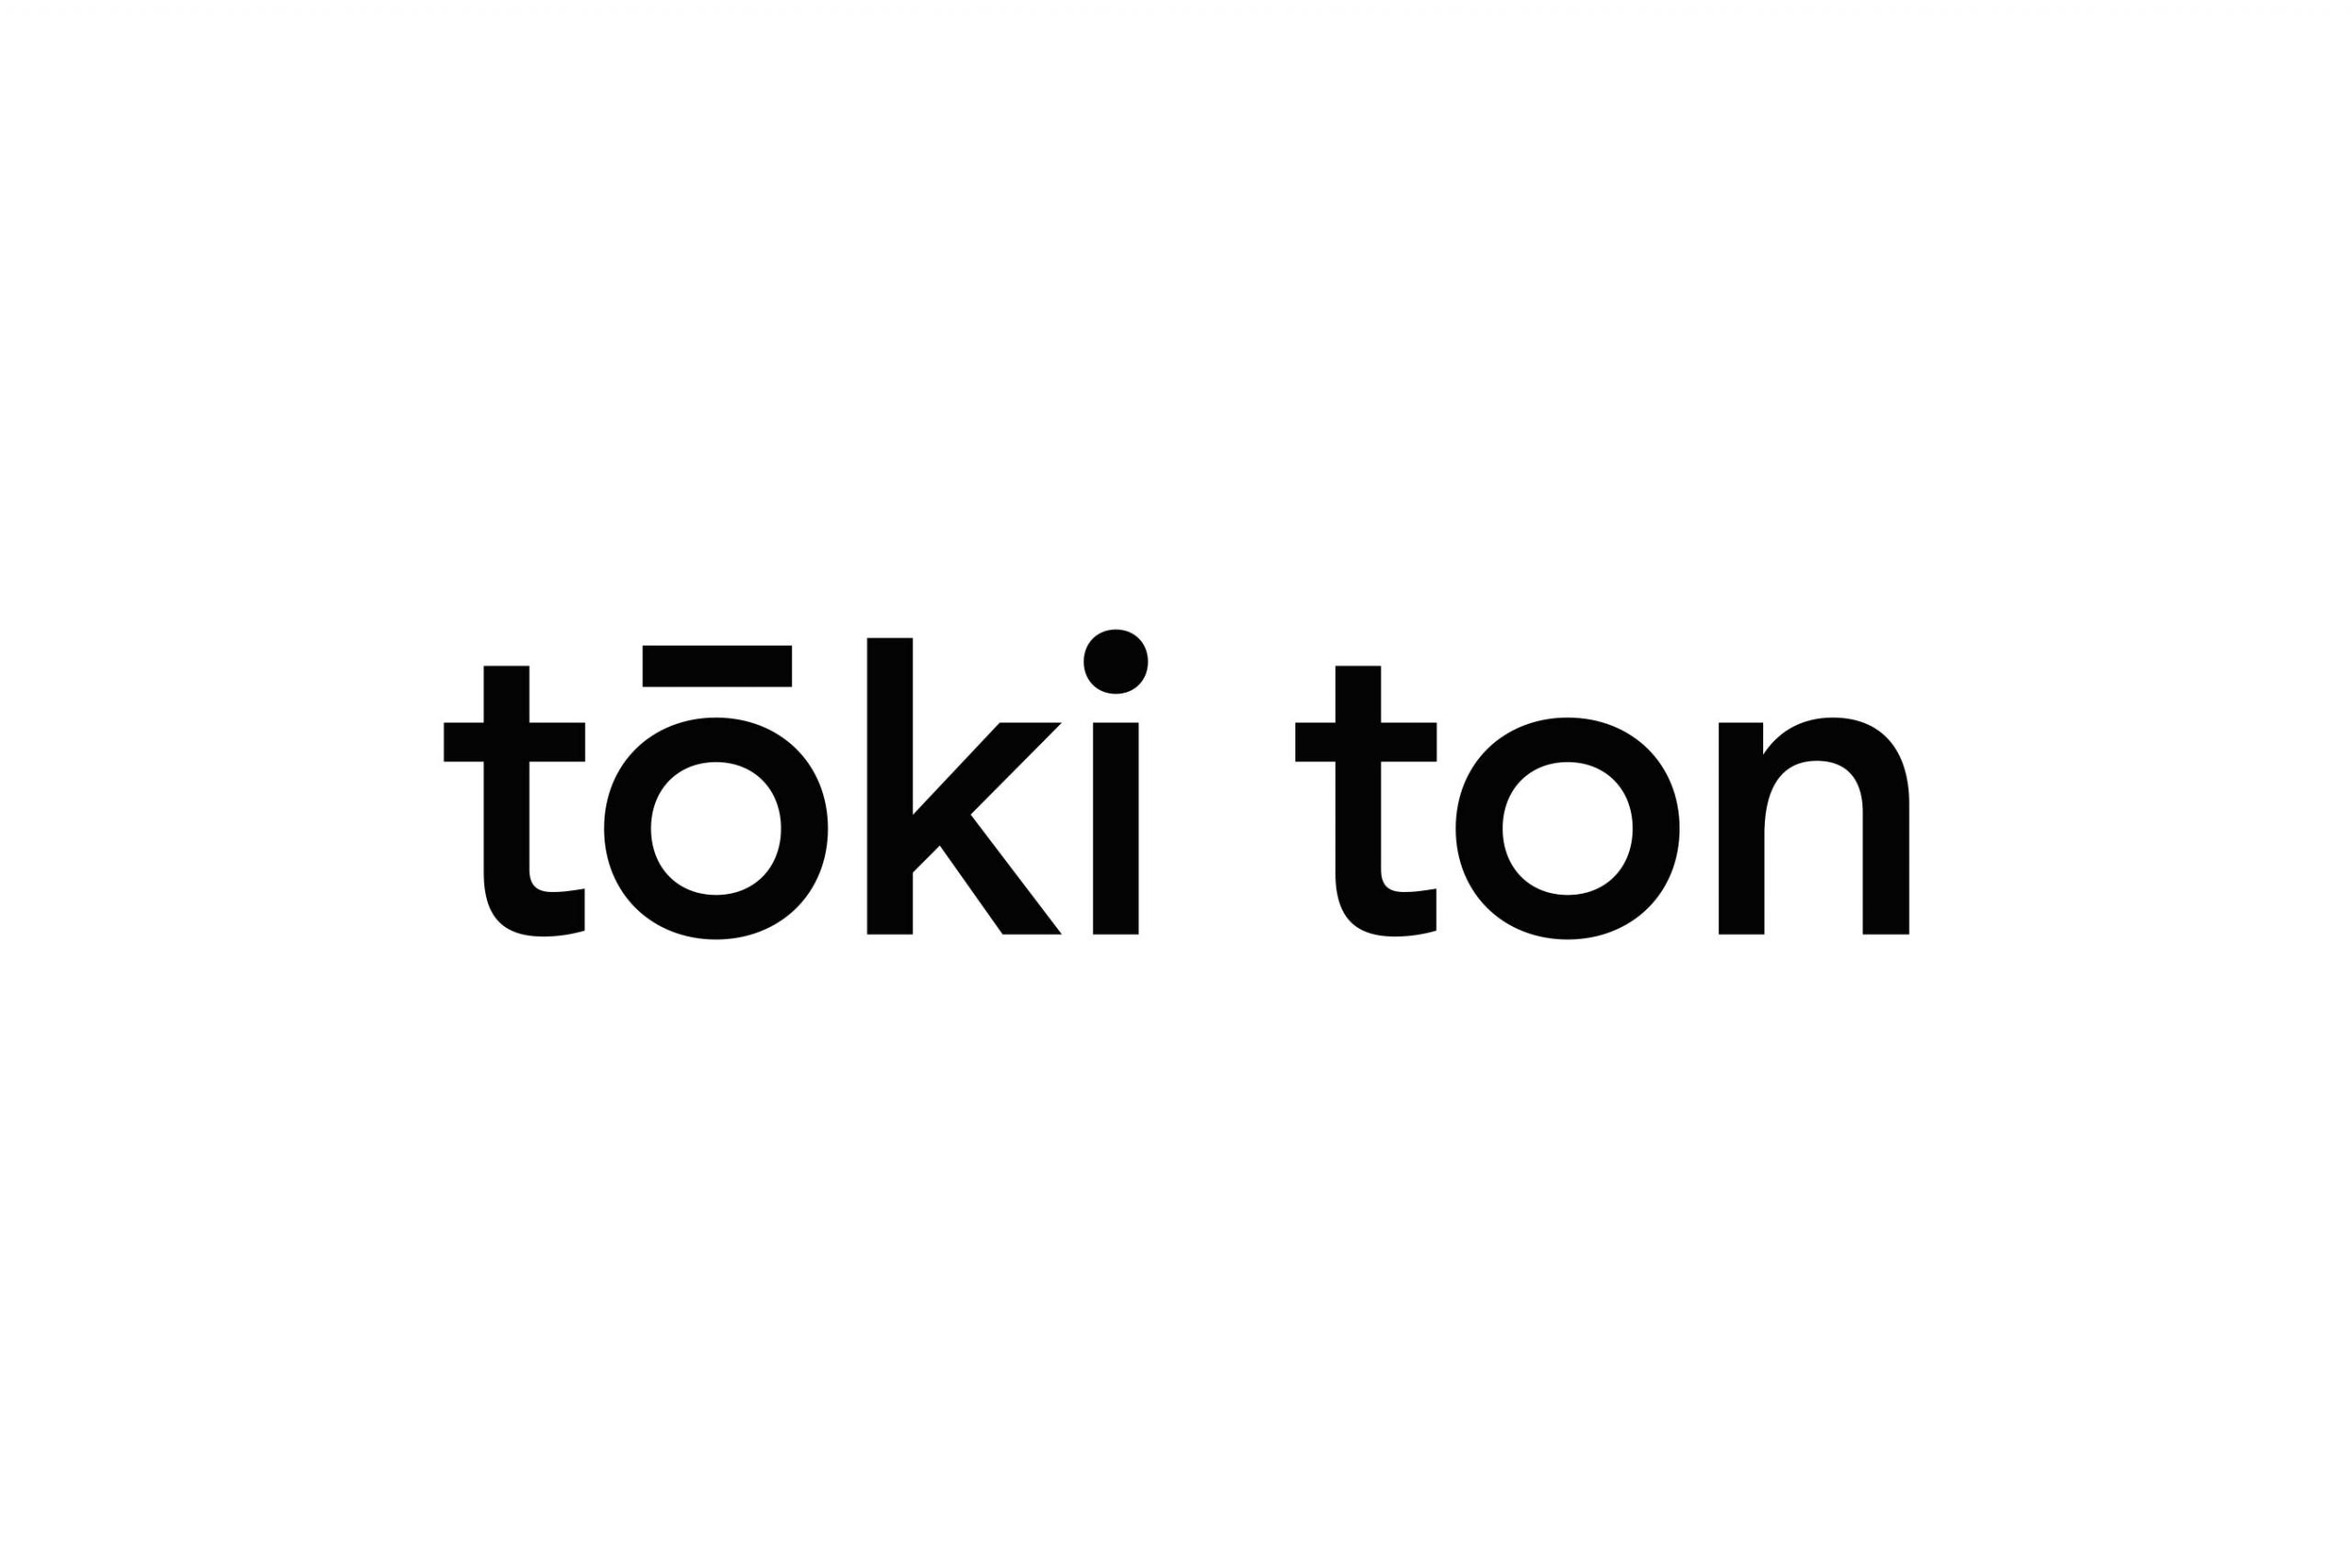 tokiton-logotypo